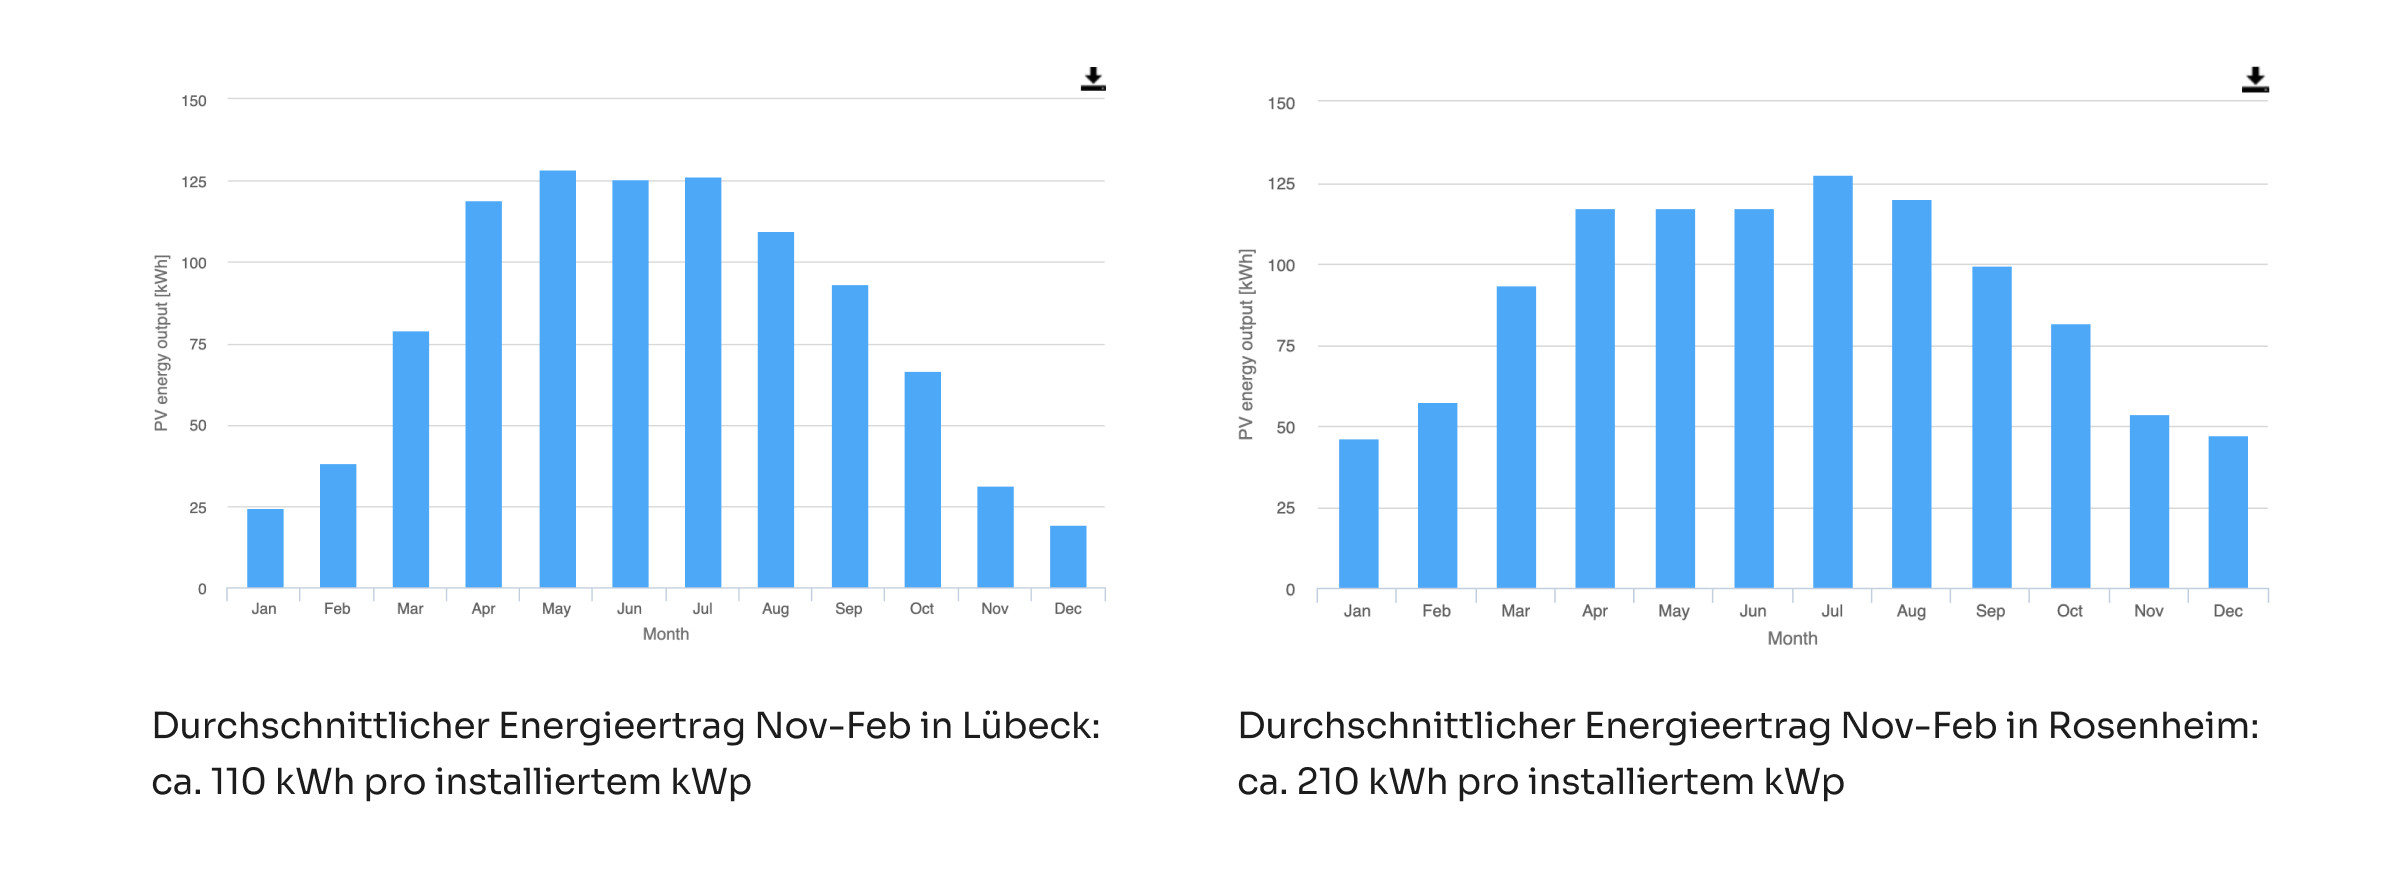 vergleich-energieertrag-pv-anlage-luebeck-rosenheim-norden-sueden-deutschland-2400x1000-1677160246.jpg